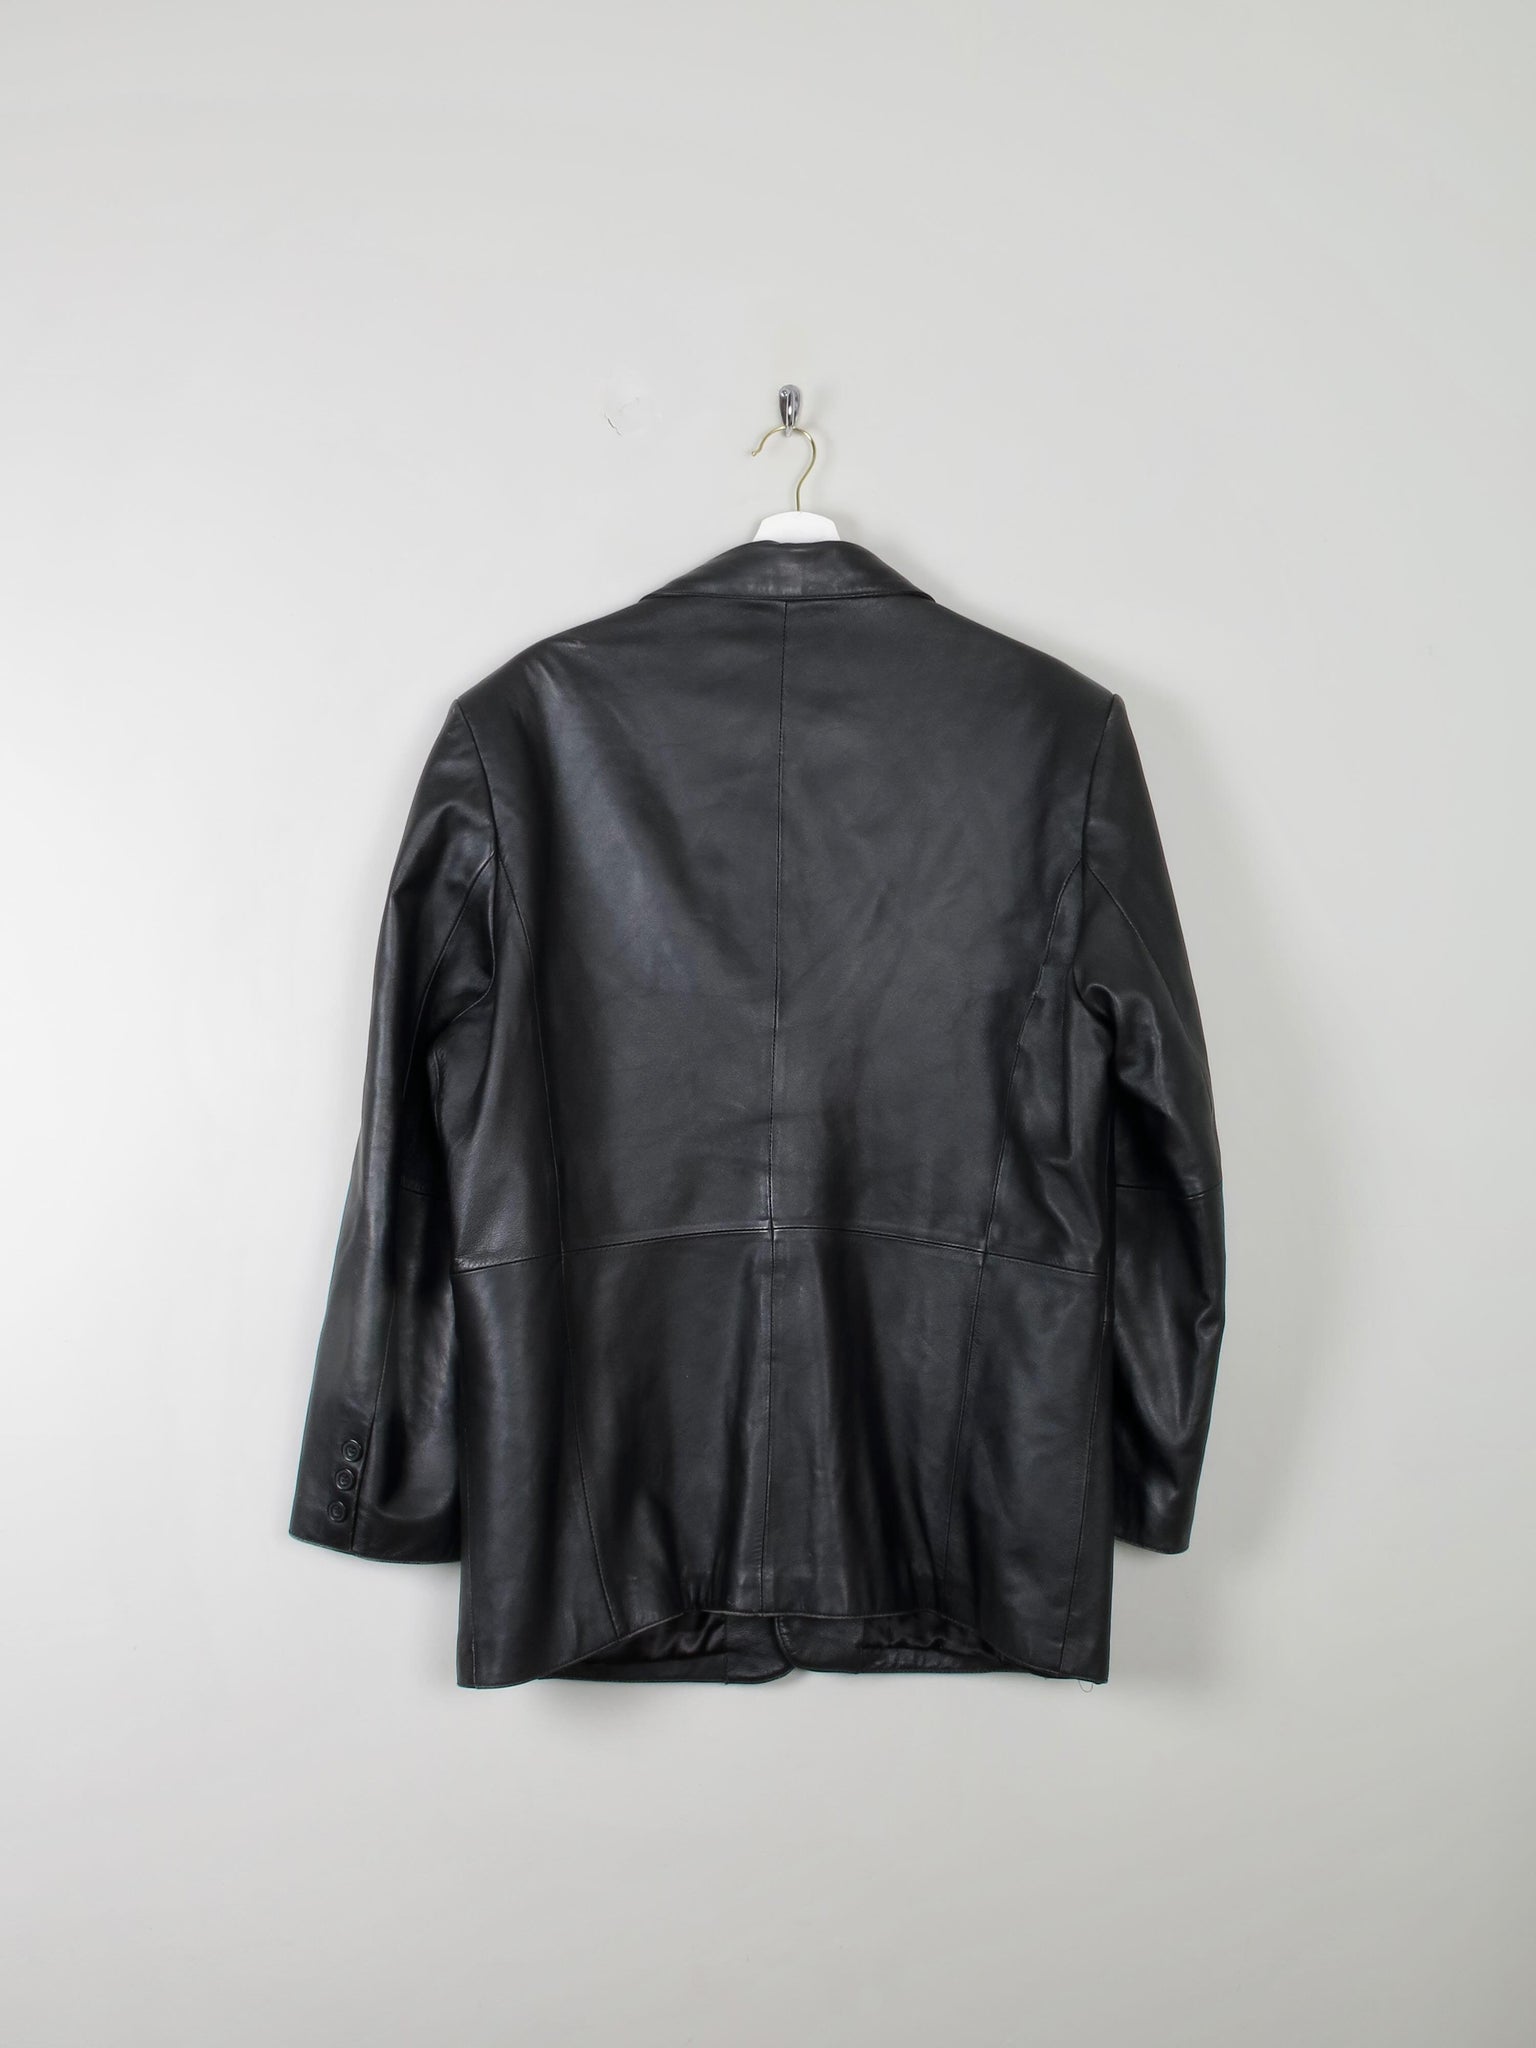 Men's Black Vintage Leather Jacket M Oversized - The Harlequin